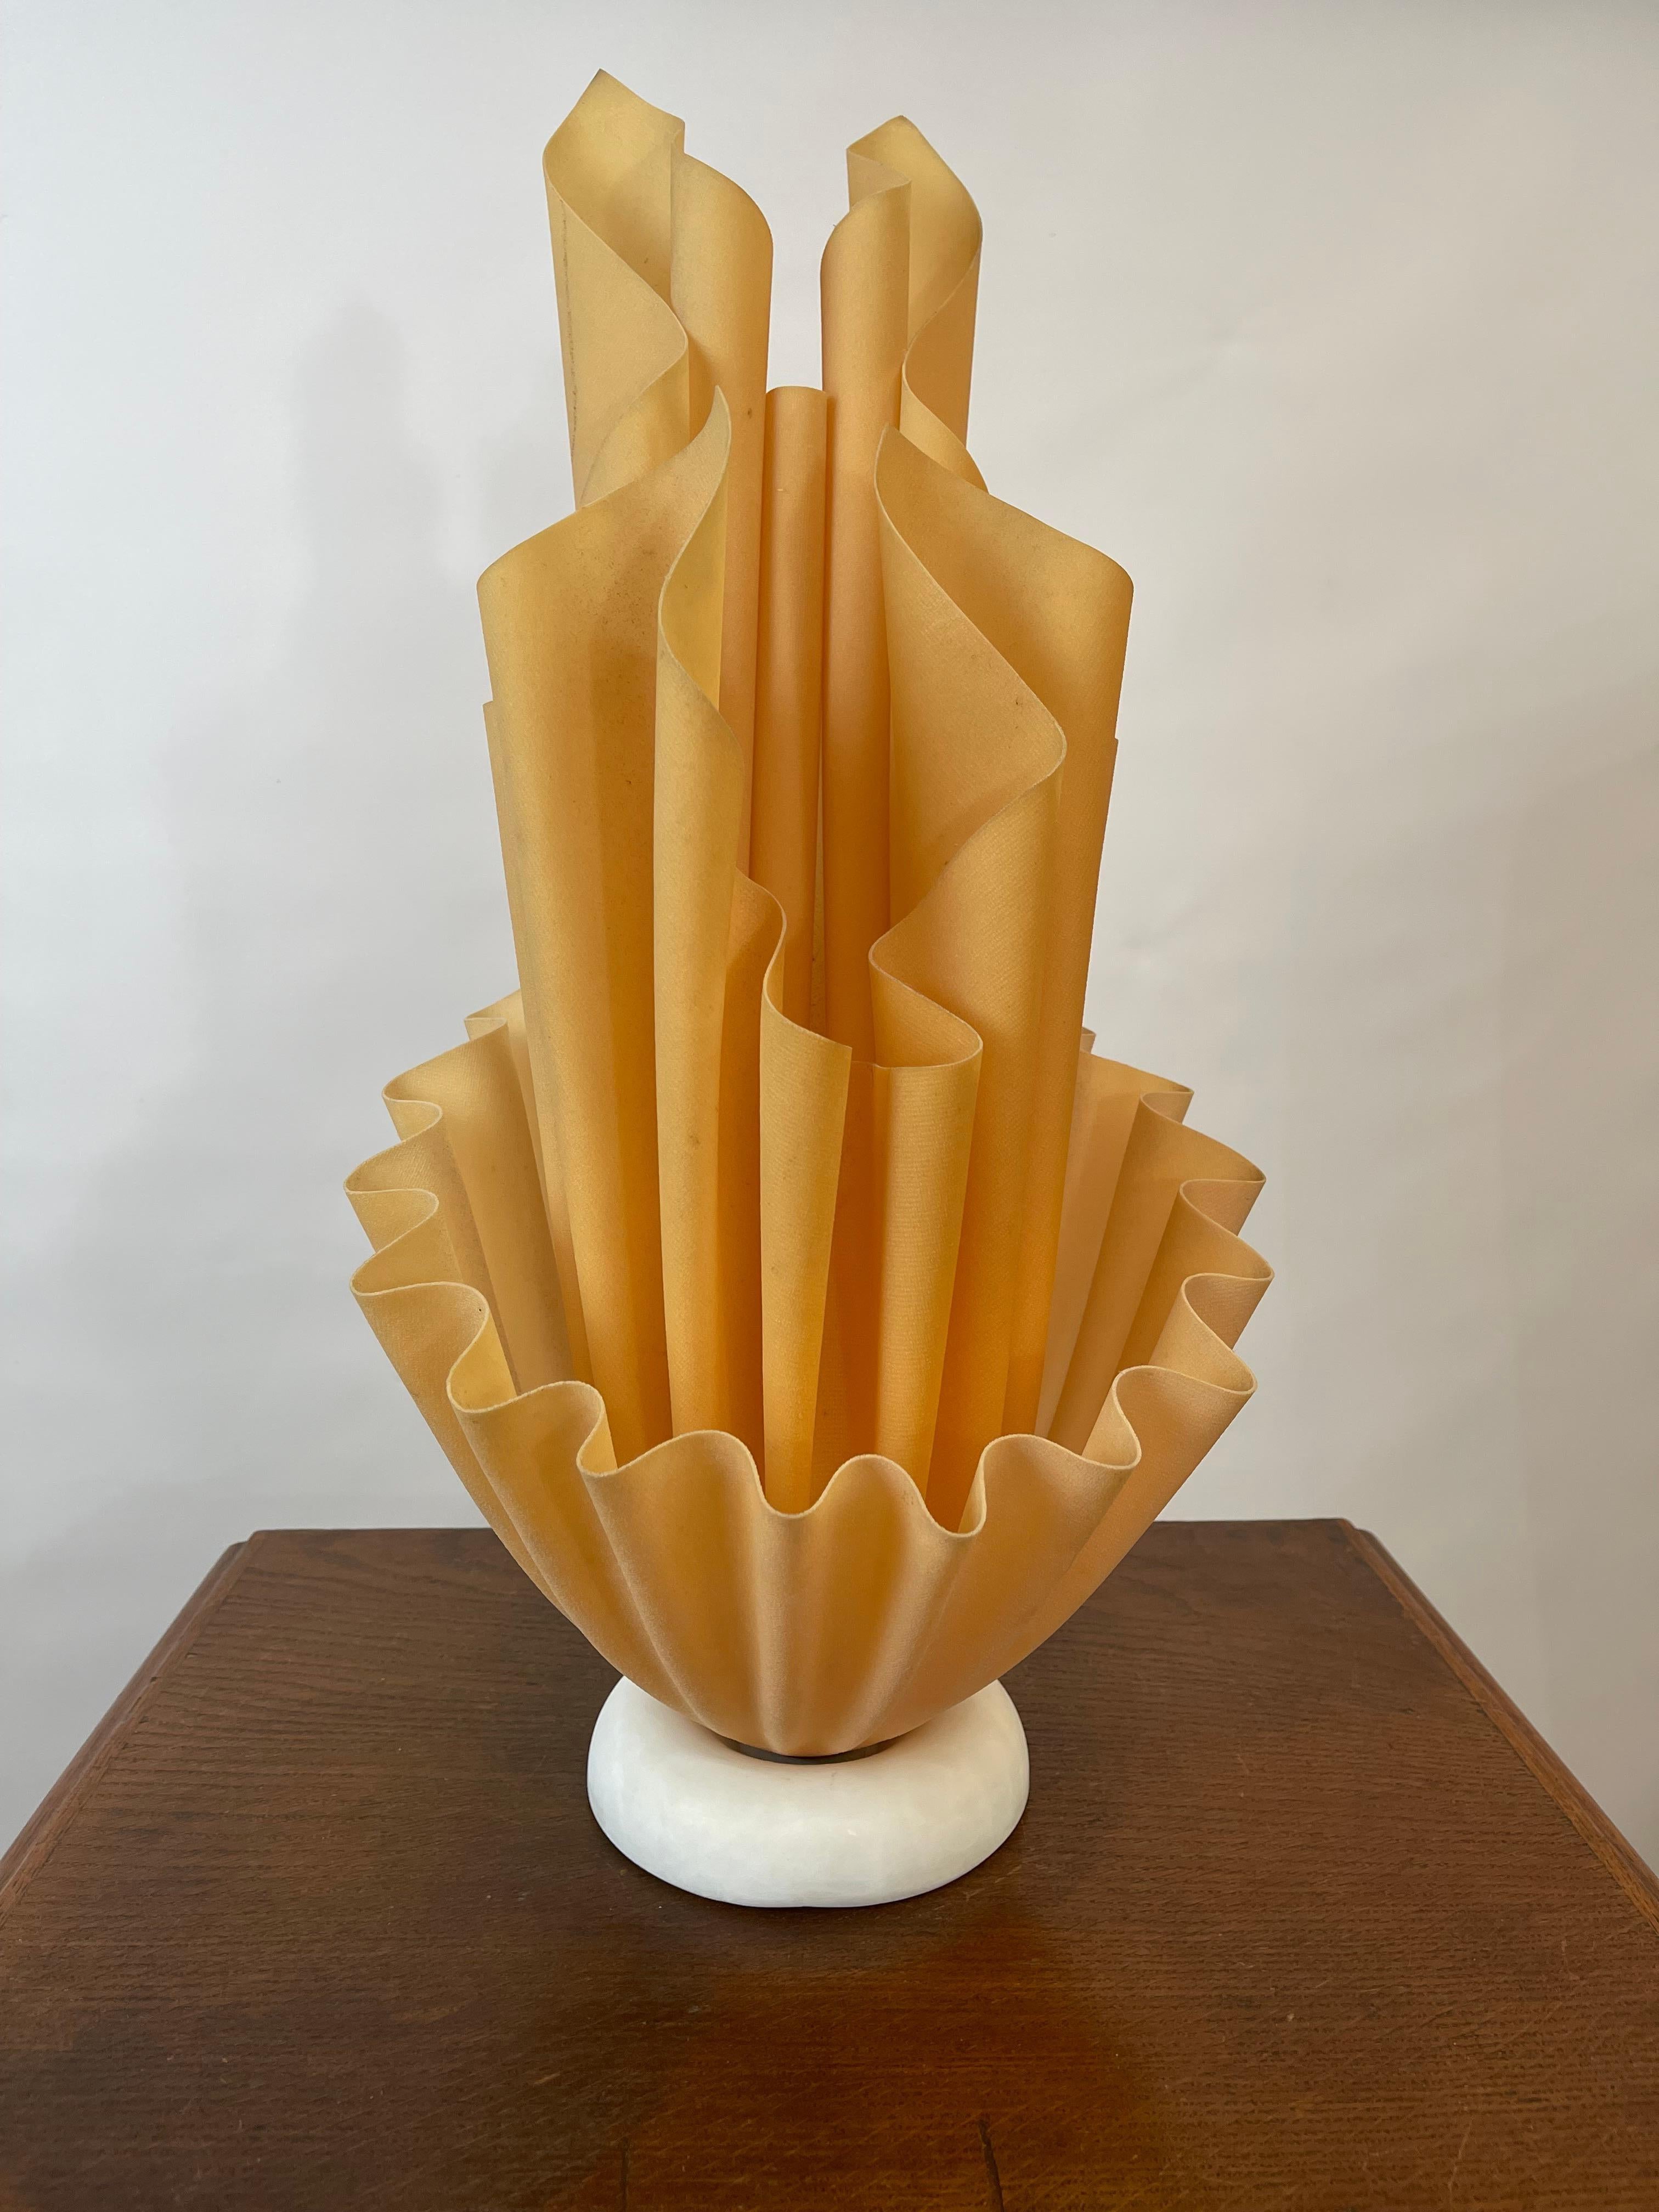 Große Lampe Georgia Jacob, Modell Corolle, in der Farbe Koralle Orange, hergestellt in Frankreich in den 1970er Jahren. 
Inspiriert von der Form einer brennenden Fackel, erzeugen diese Lampen wunderschöne Lichtwirbel und -vorhänge. Diese ikonische